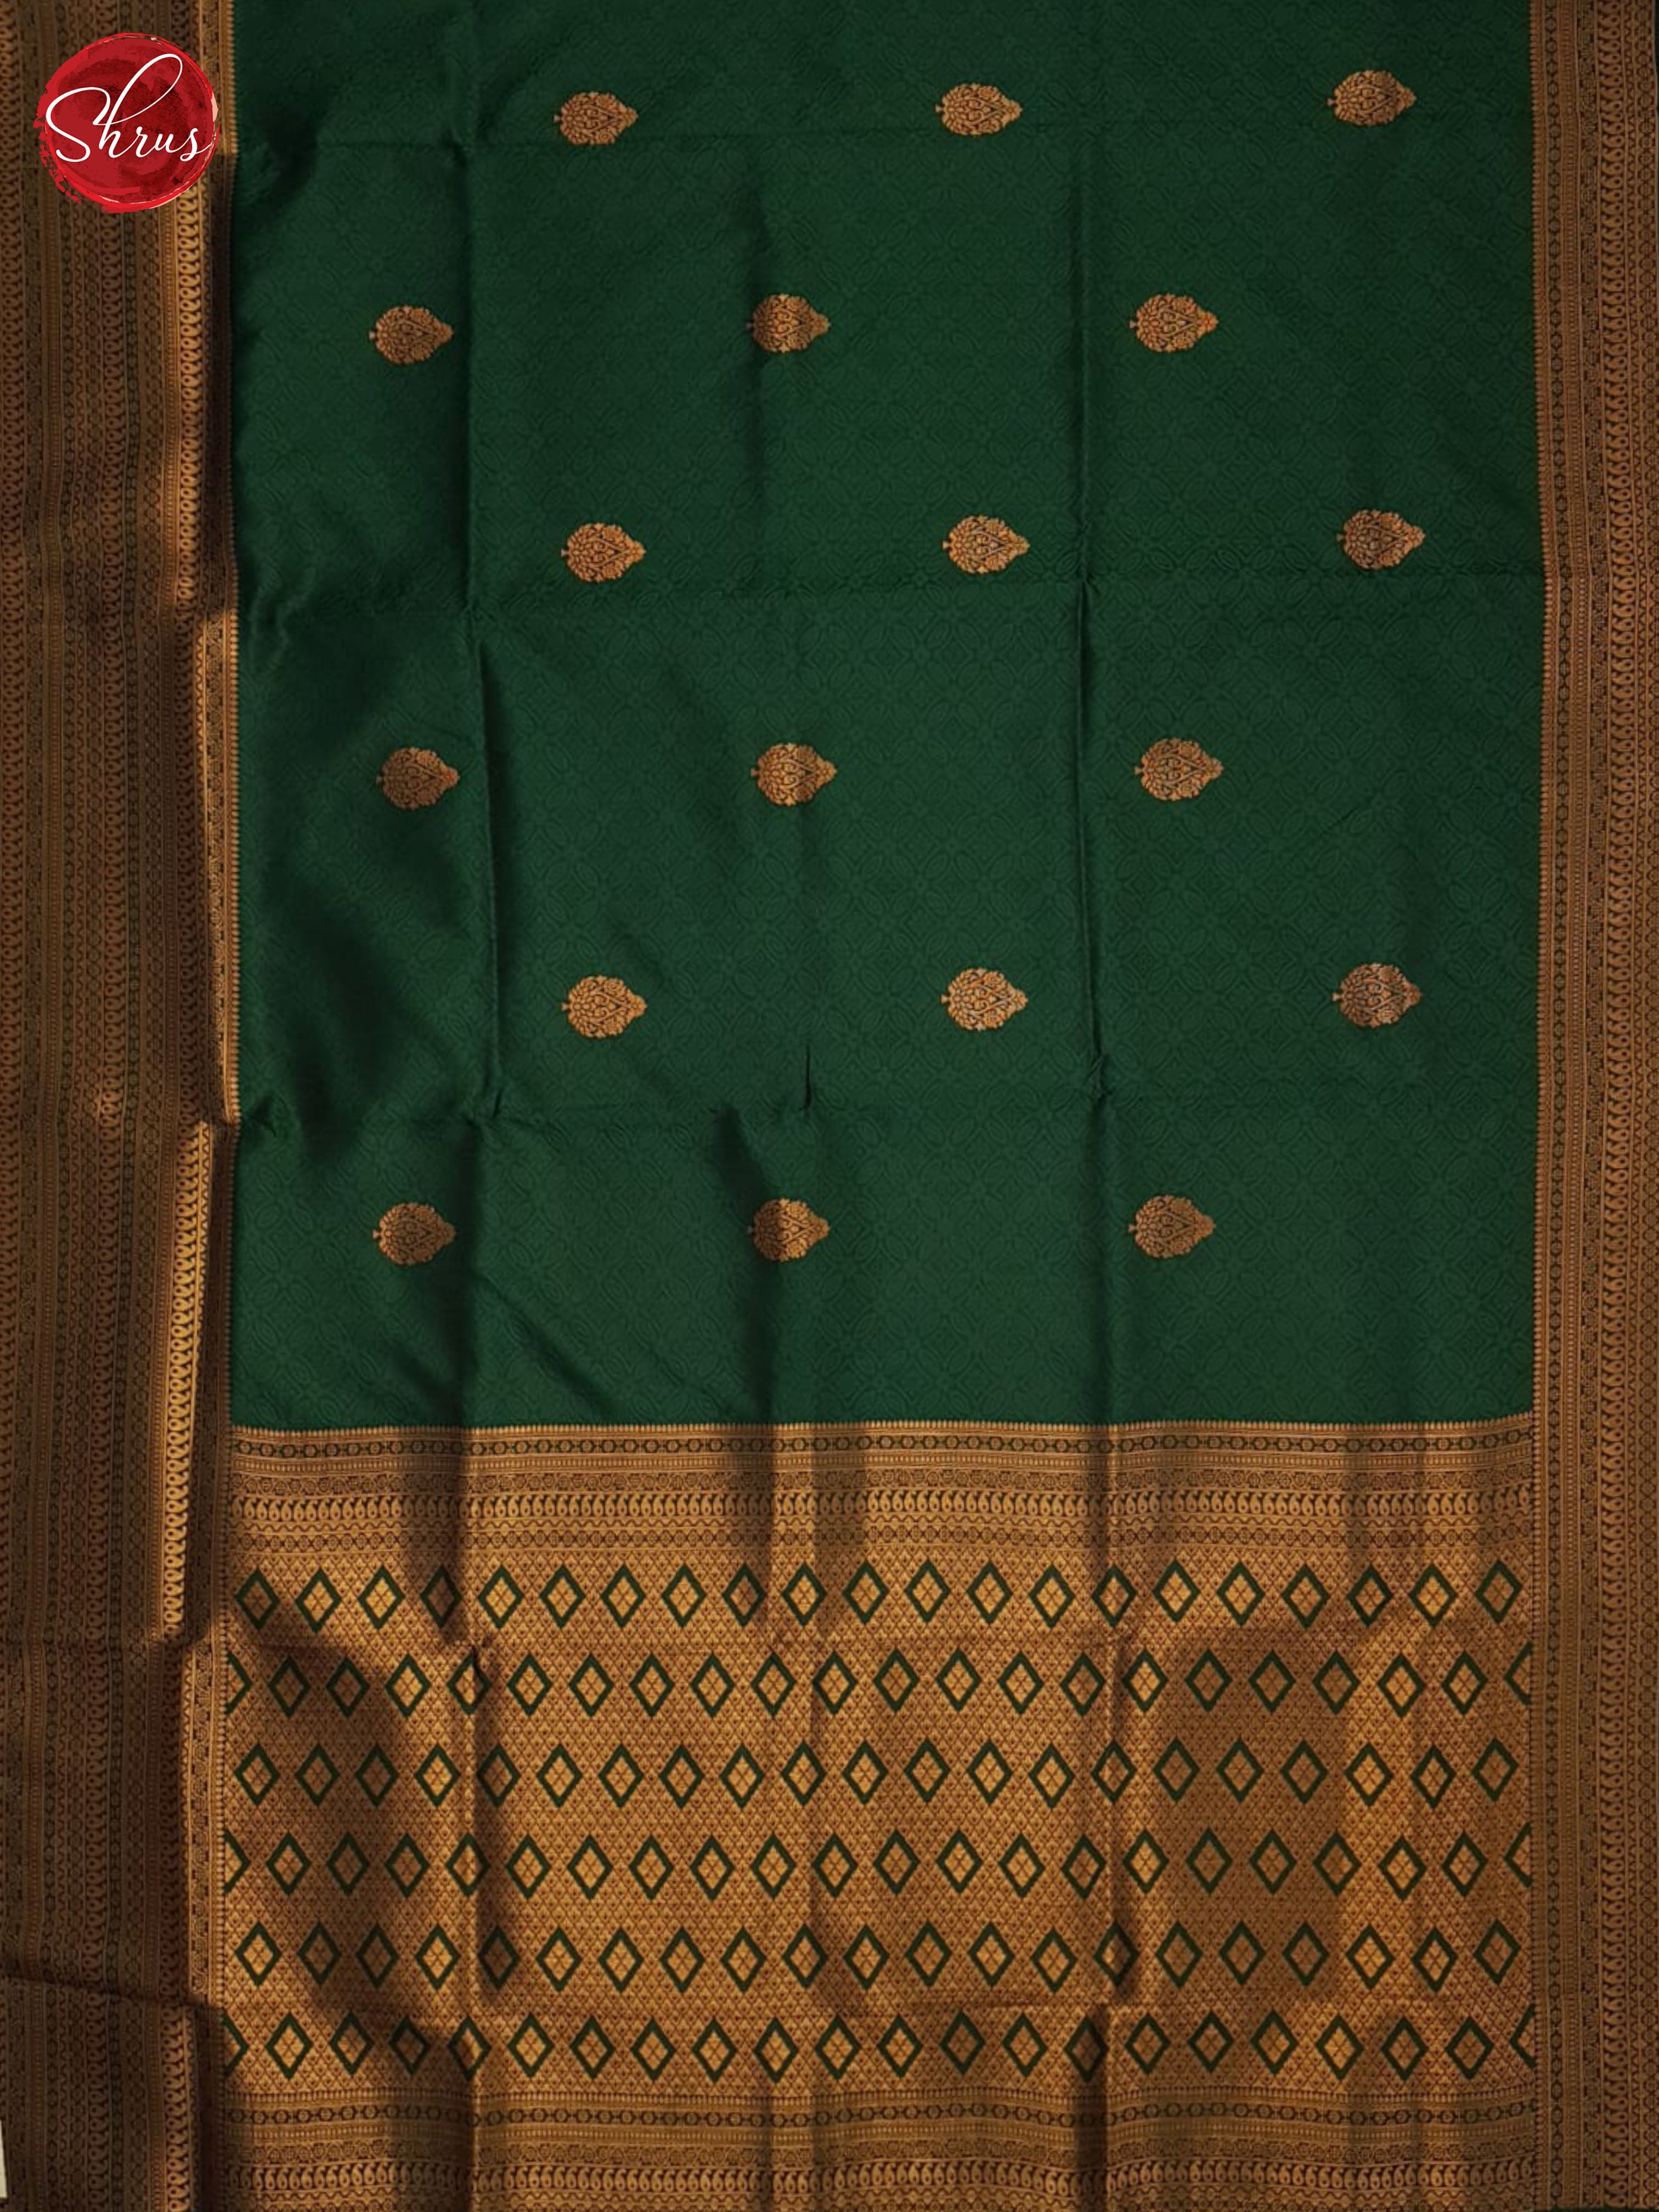 Green(single tone)- Semi kanchipuram Saree - Shop on ShrusEternity.com